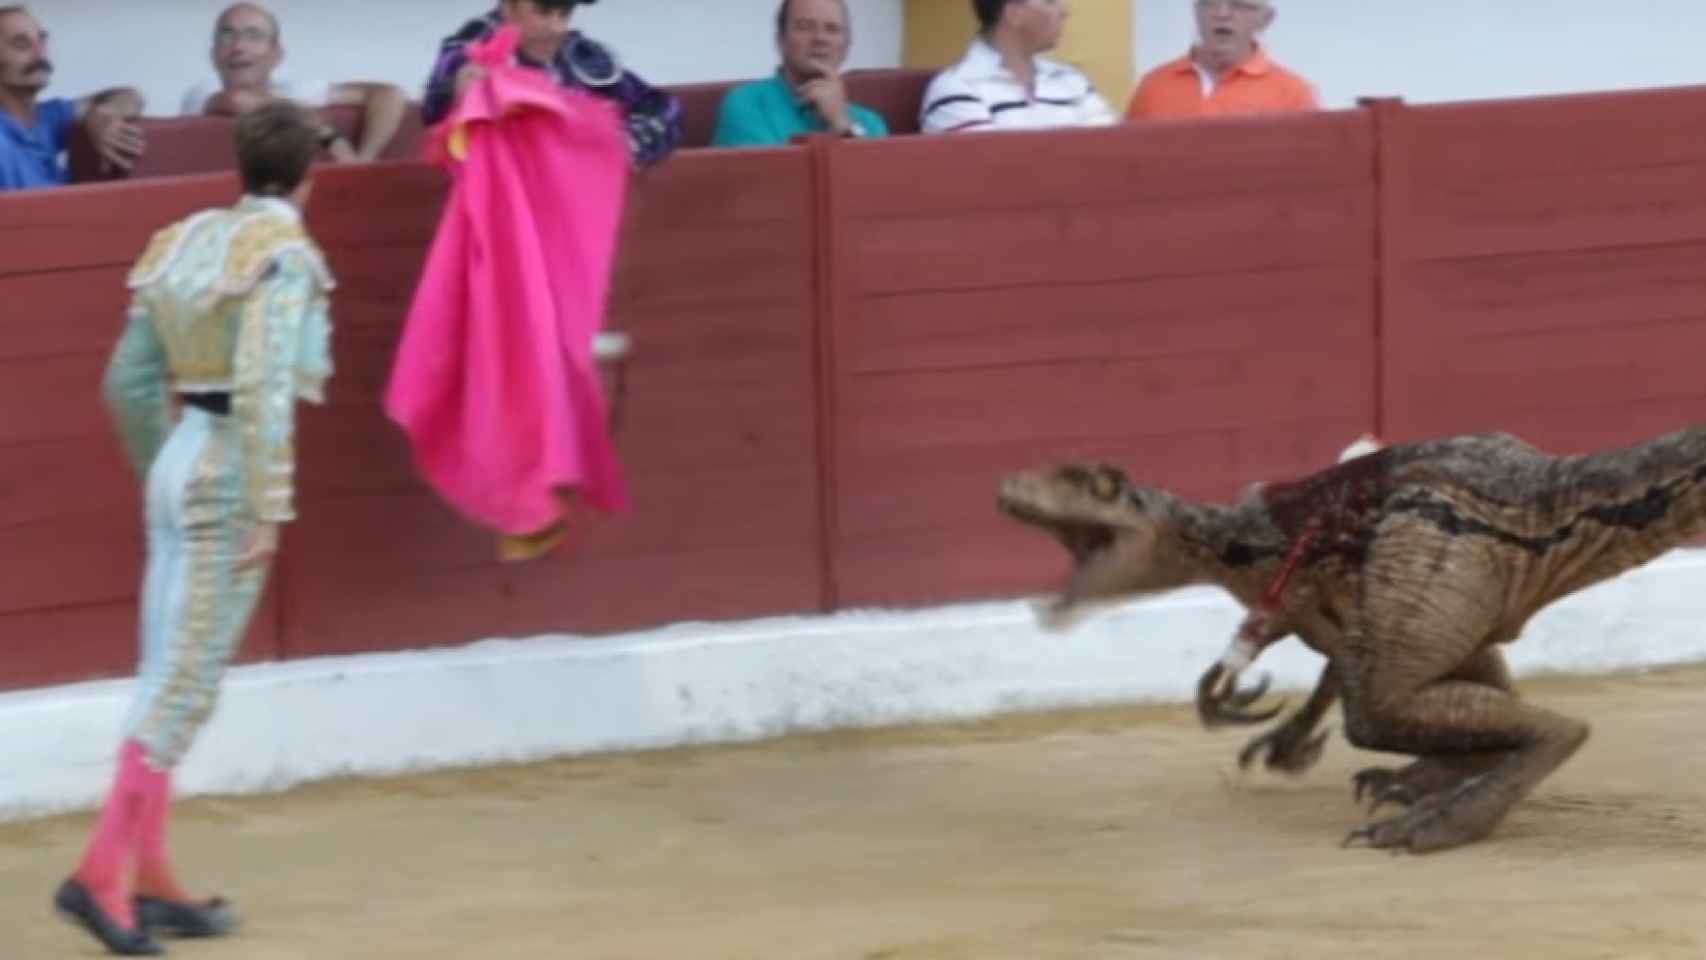 El velocirraptor desafía al matador después de un par de banderillas